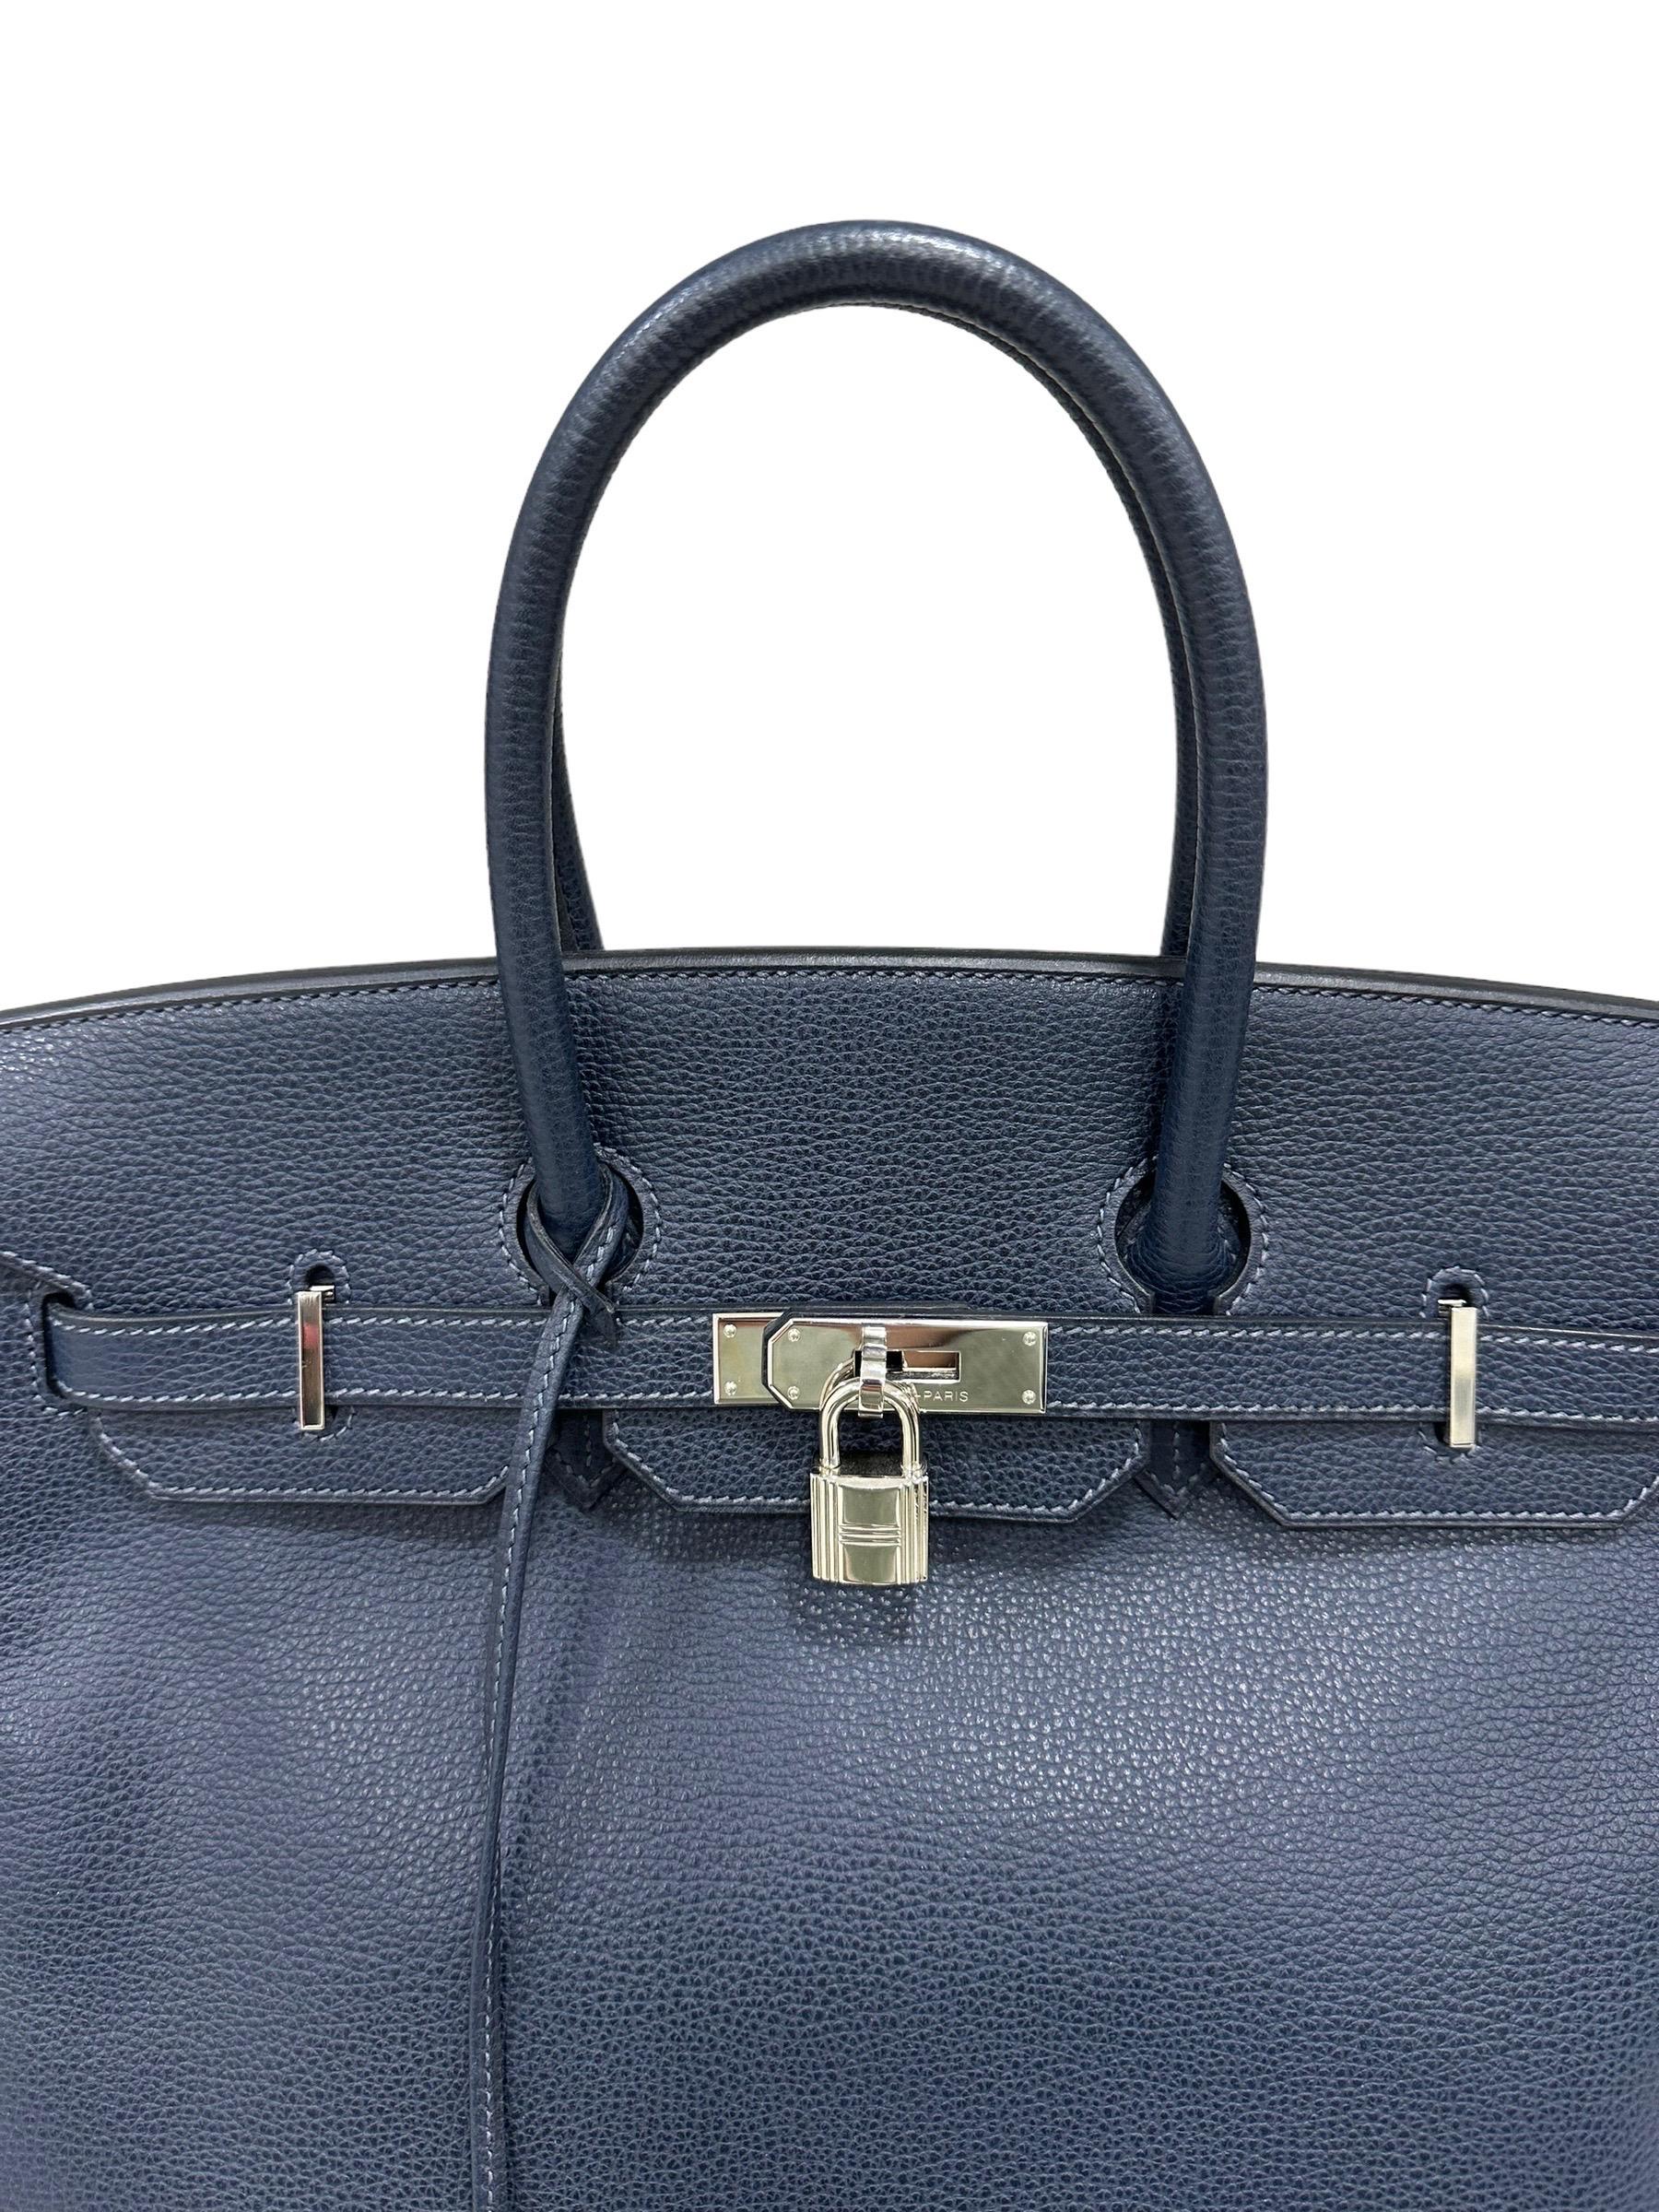 Hermès Handtasche, Birkin Modell, Größe 35, in Bleu Abysse Farbe Epsom Leder mit silbernen Hardware gemacht. Ausgestattet mit der klassischen Klappe mit Verriegelung mit horizontalem Band, Vorhängeschloss und Schlüssel. Ausgestattet mit einem